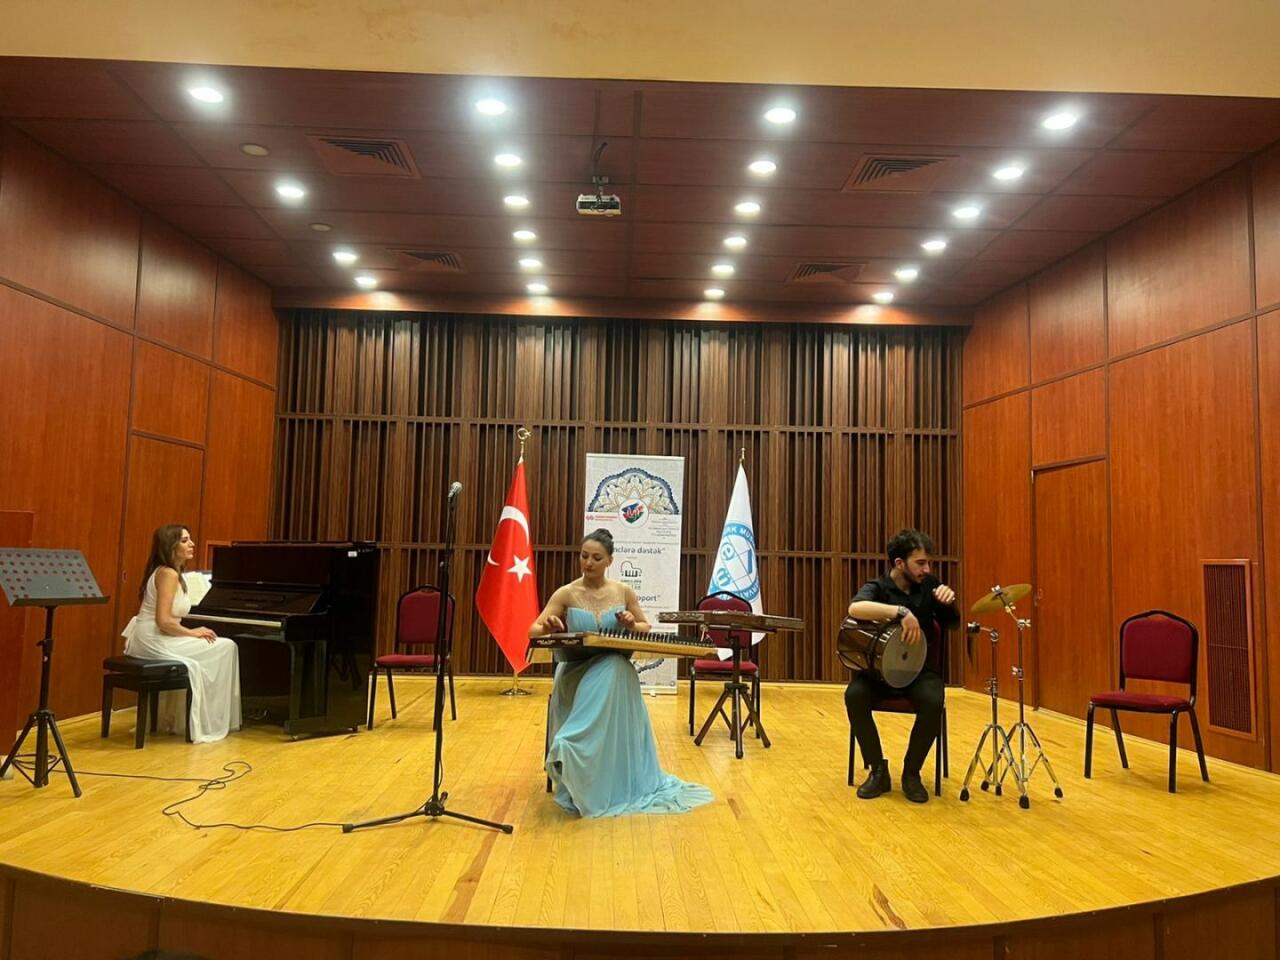 Успех азербайджанского проекта "Gənclərə dəstək" в Турции